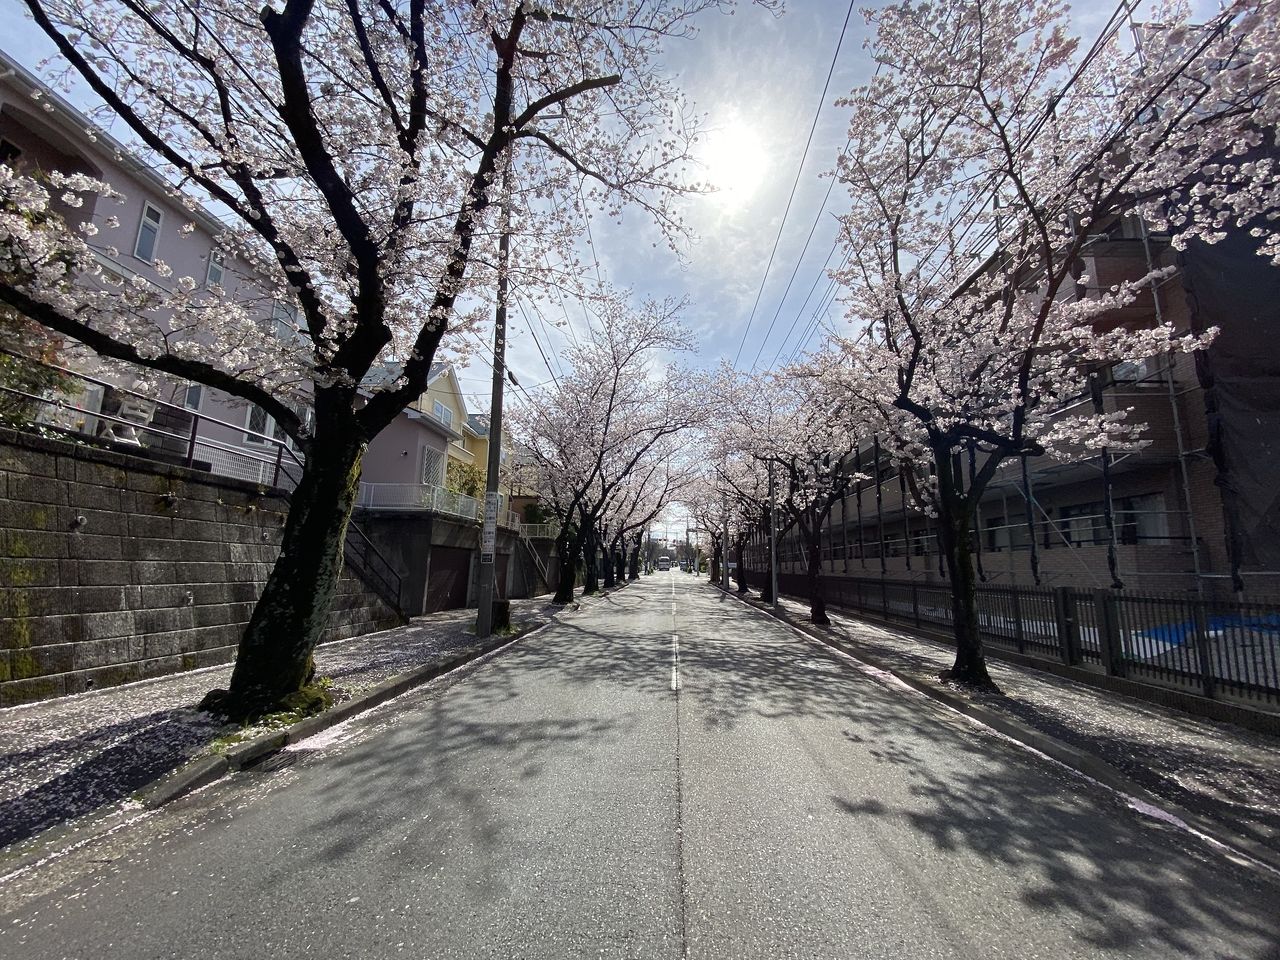 賃貸物件「パークテラスあざみ野」近くの「桜通り」の桜の様子。